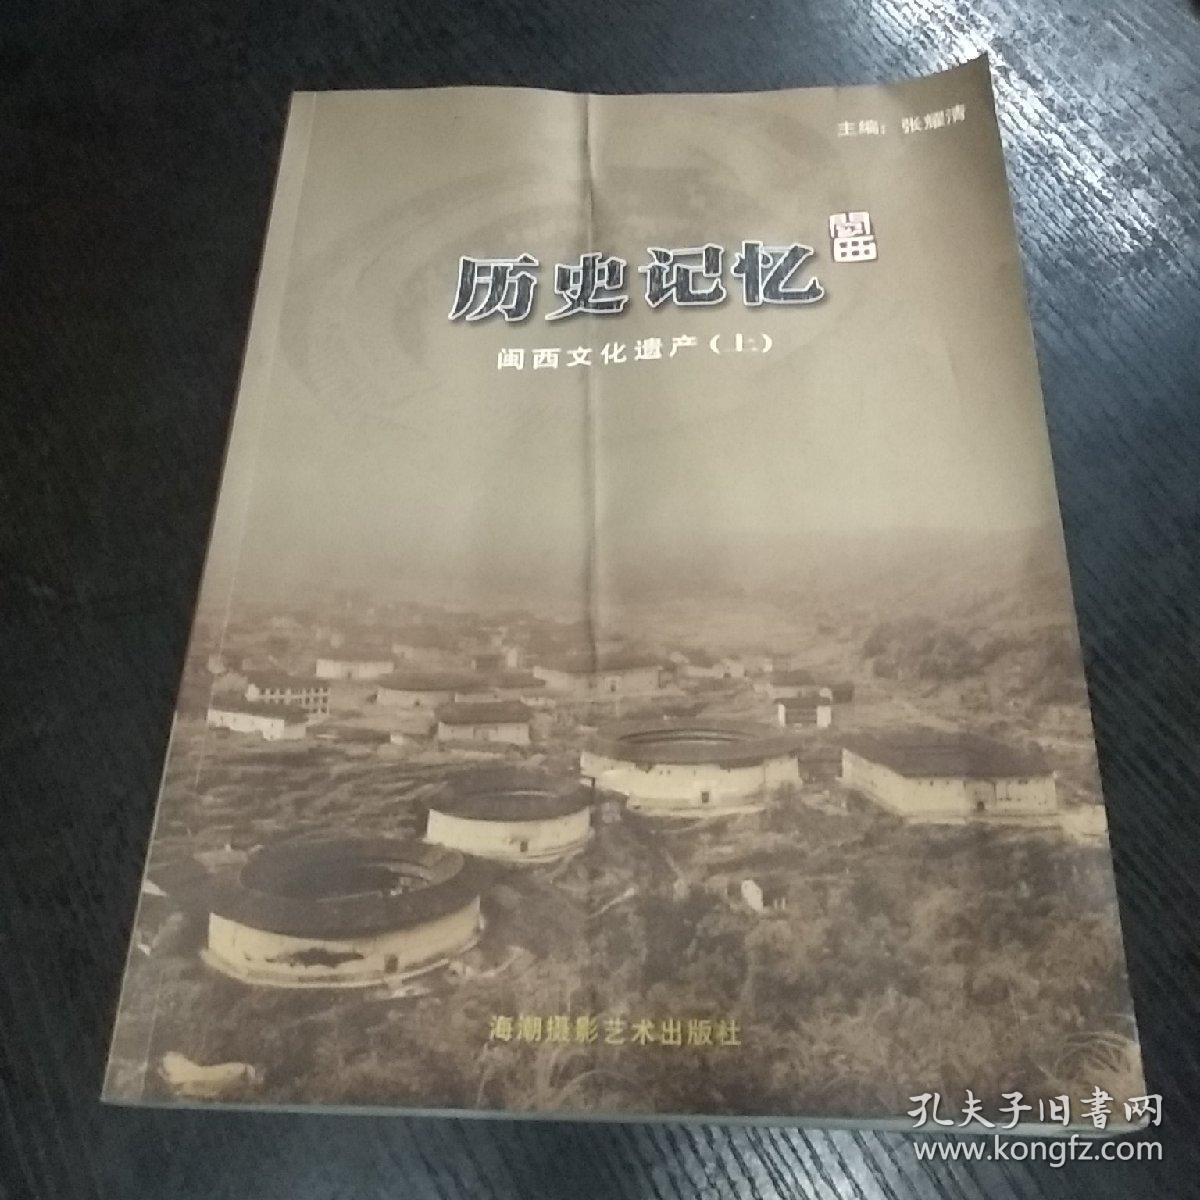 历史记忆 闽西文化遗产(上册)